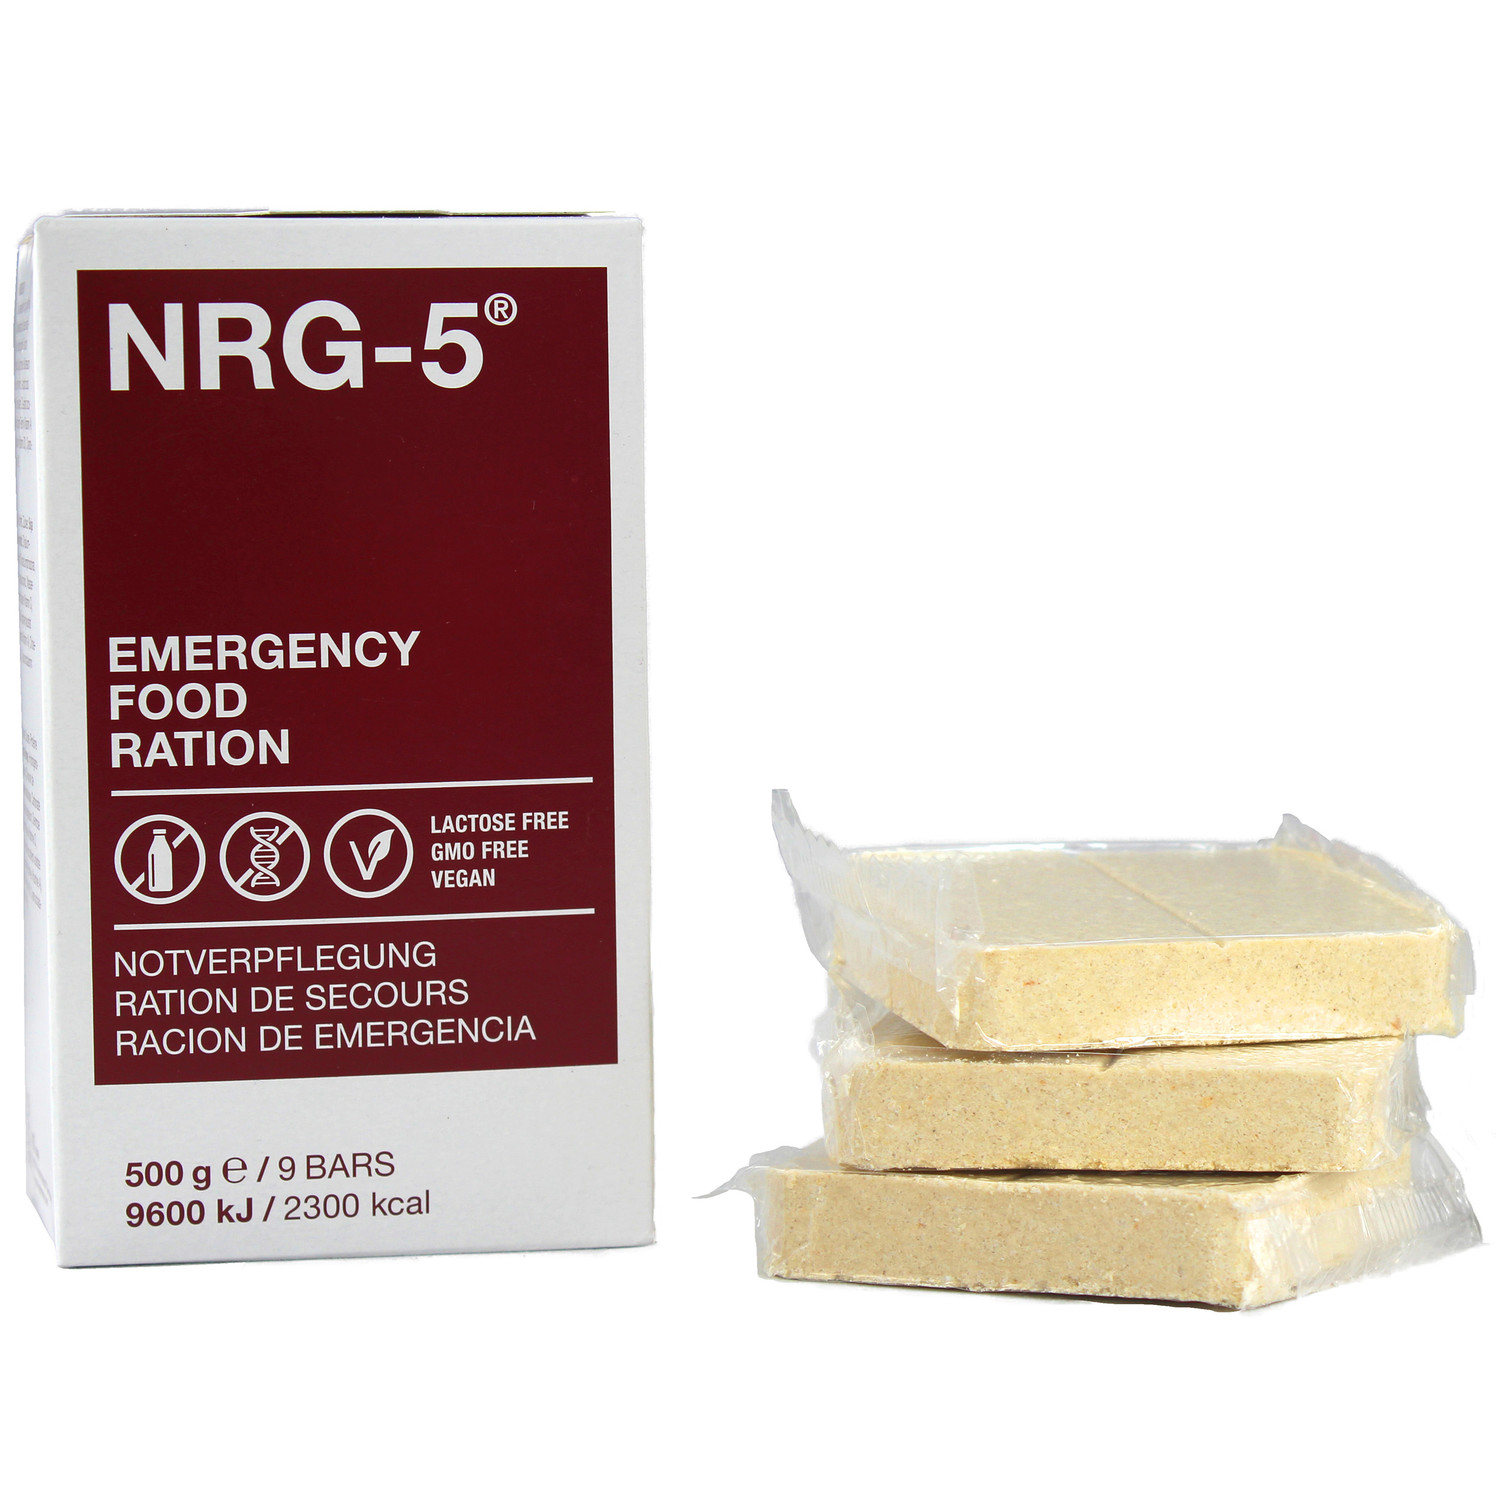 1 Karton NRG-5 